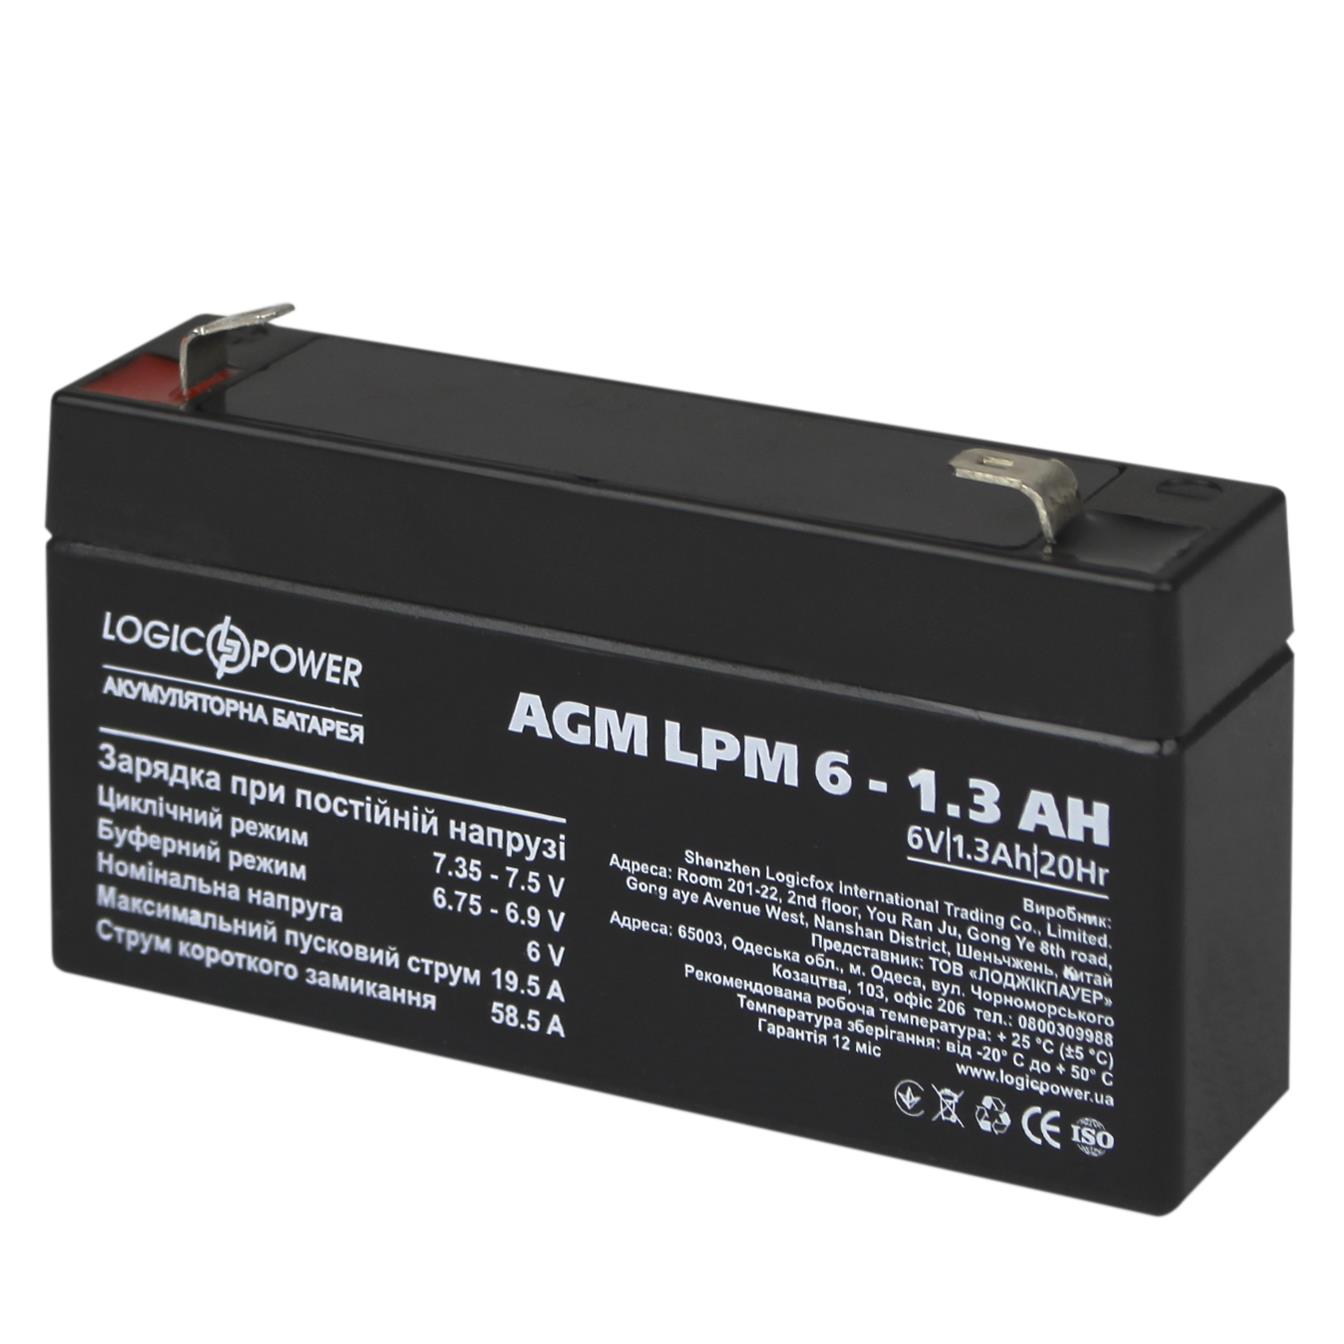 Цена аккумулятор 6 в LogicPower AGM LPM 6V - 1.3 Ah (4157) в Киеве